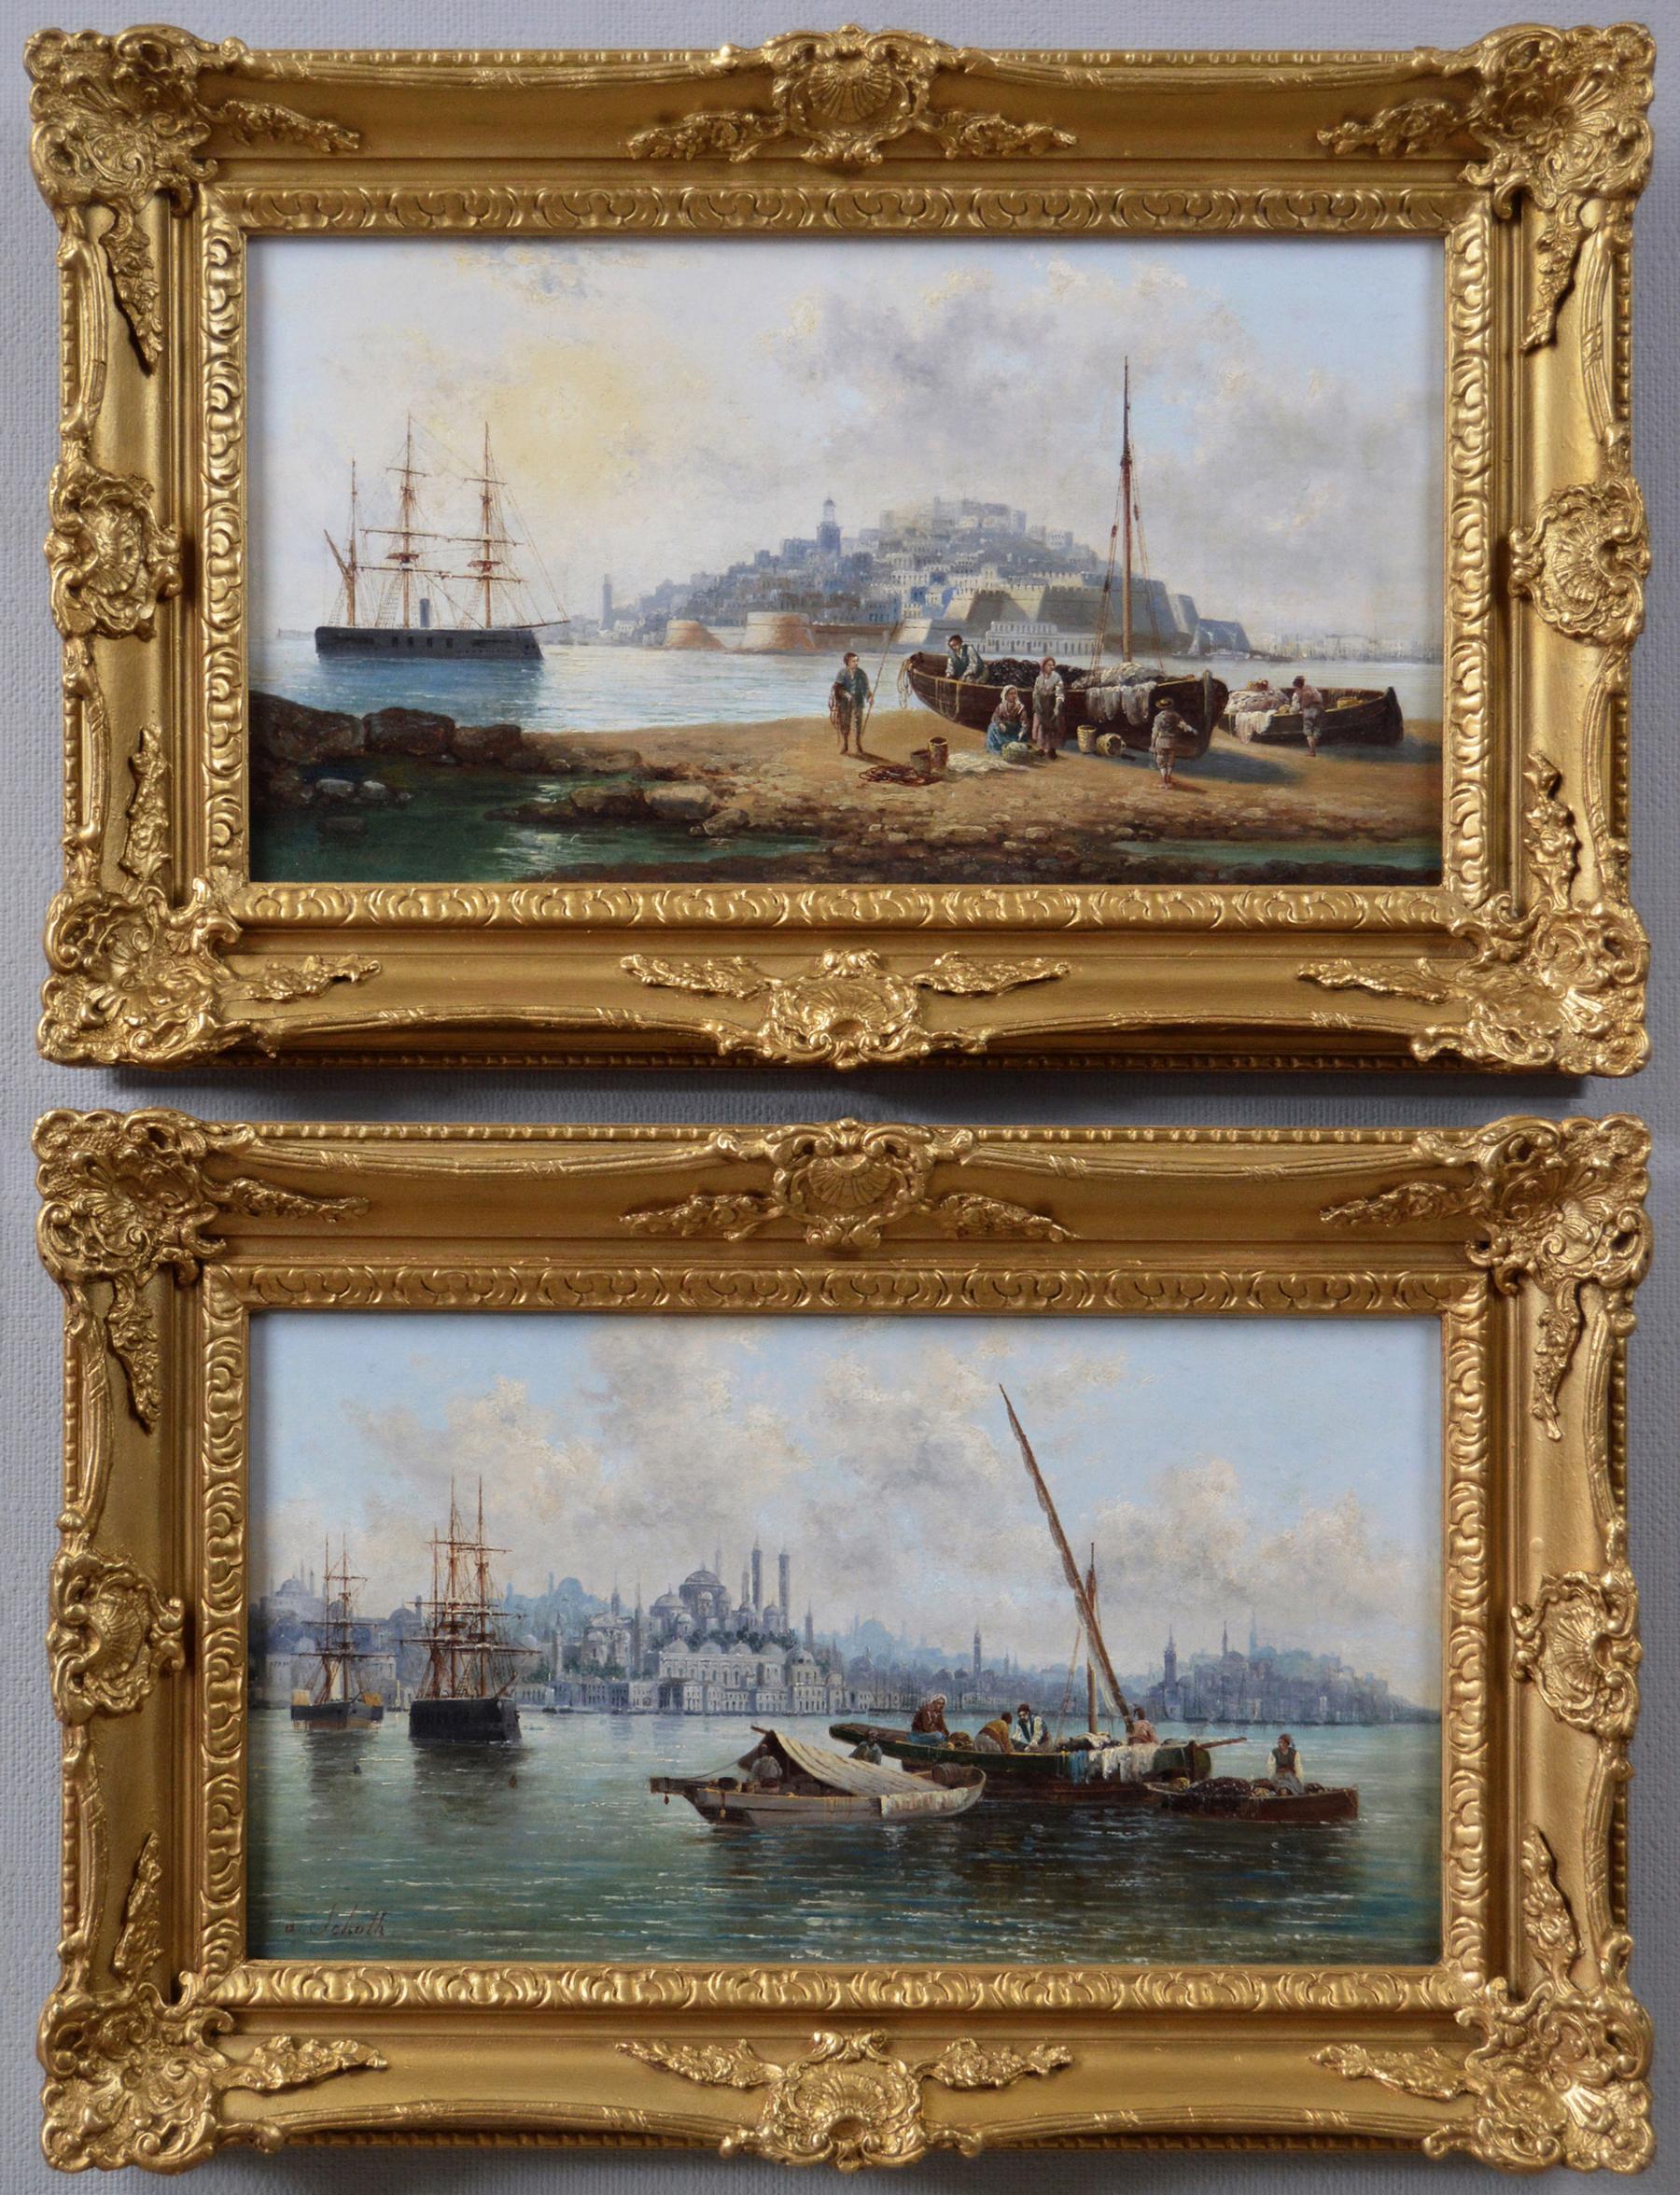 Landscape Painting Anton Schoth - Paire de peintures à l'huile du 19e siècle représentant des paysages marins de Malte et de Constantinople (Istanbul)